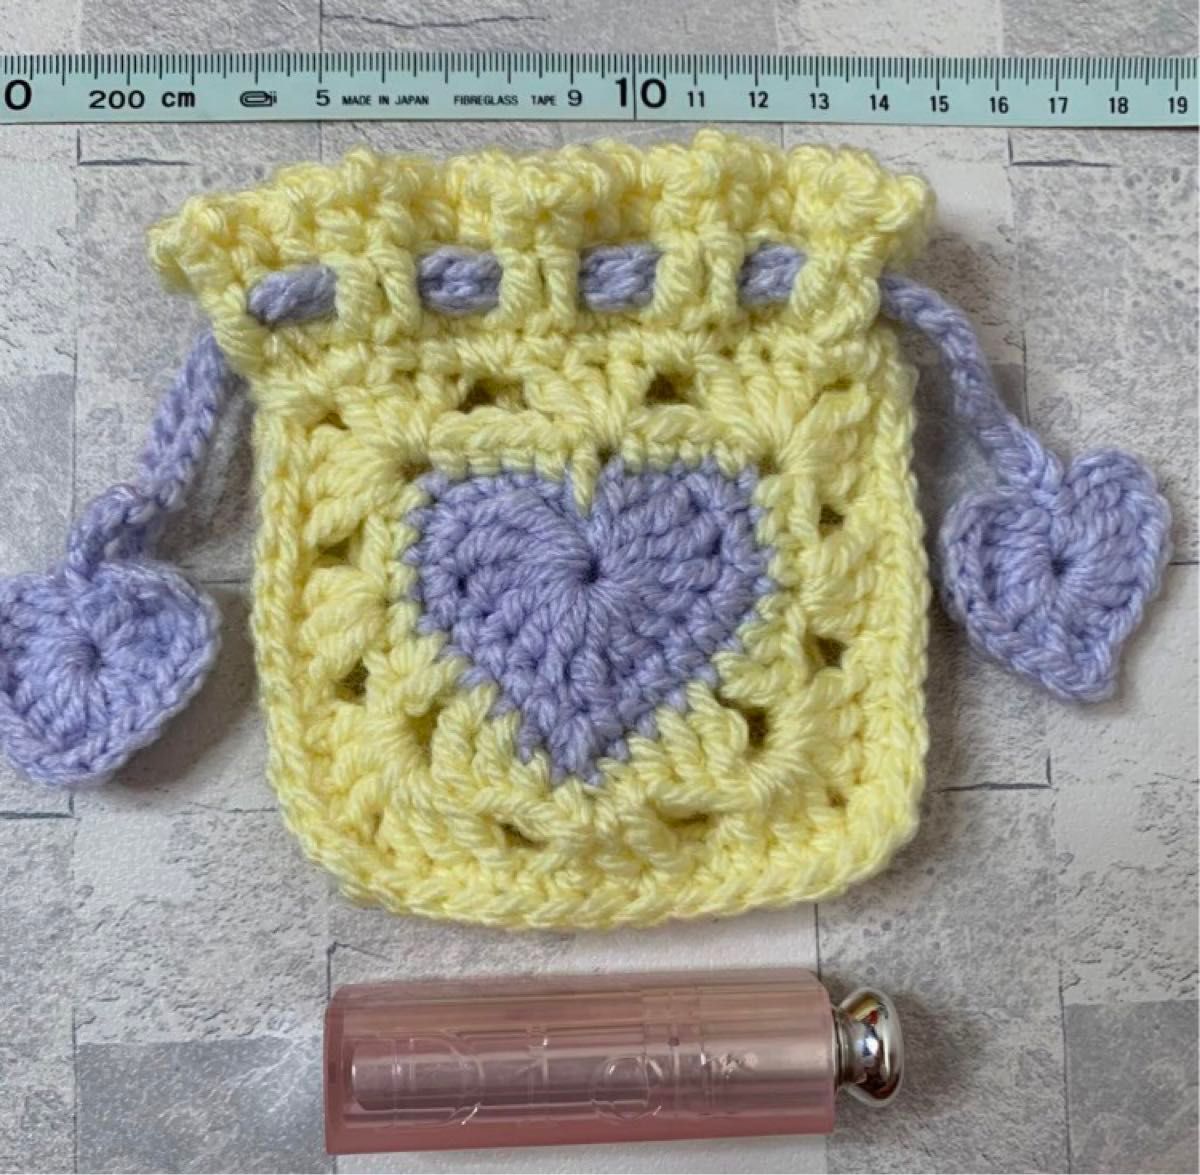 ハートミニ巾着 イエロー×紫 手編みハンドメイド 編み物